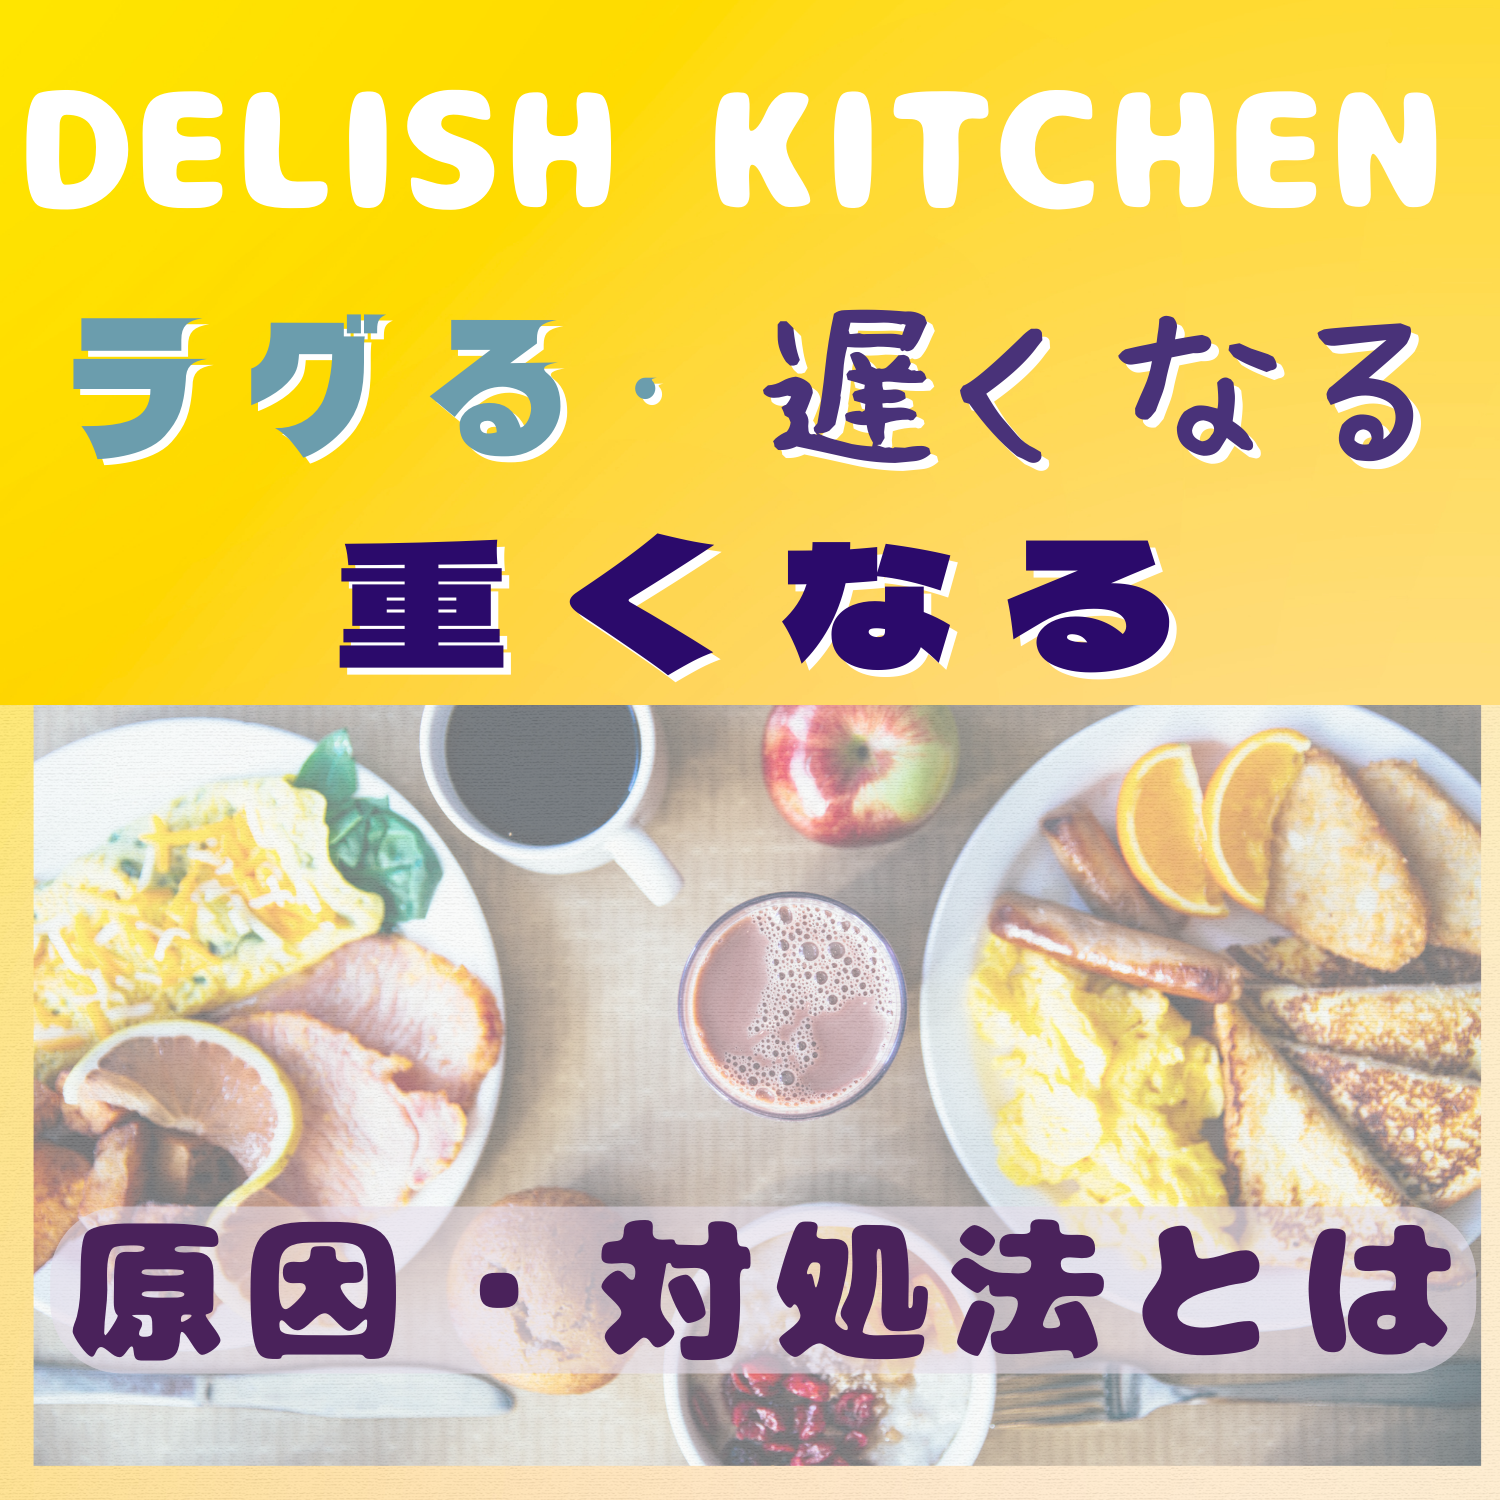 DELISH KITCHEN(デリッシュキッチン)がラグる・遅くなる・重くなる原因と対処法とは #デリッシュキッチン